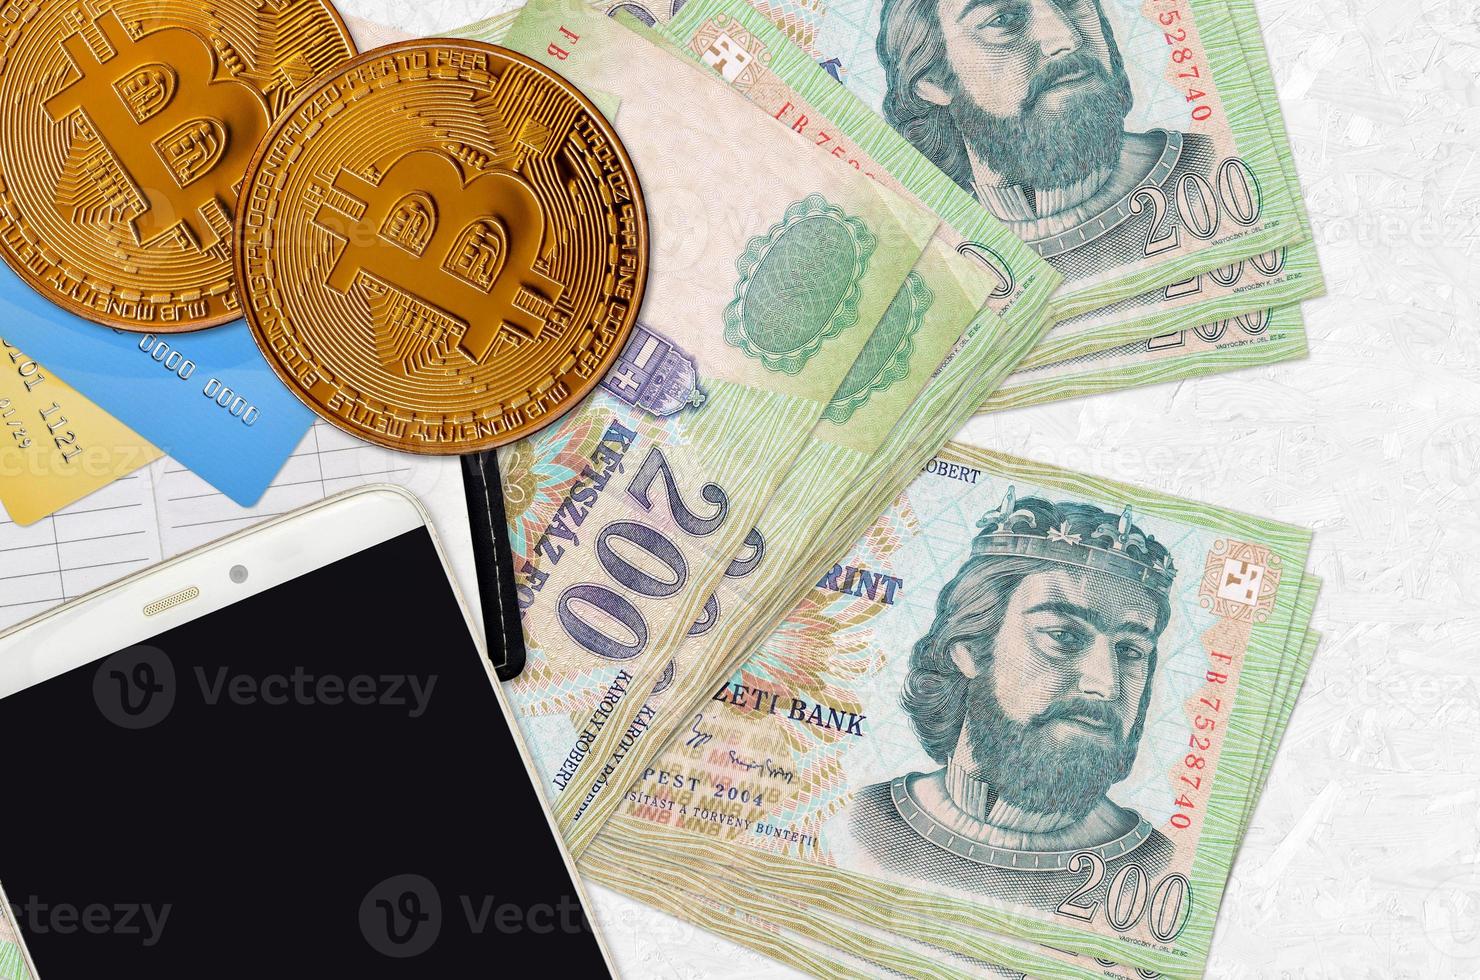 200 ungherese fiorino fatture e d'oro bitcoin con smartphone e credito carte. criptovaluta investimento concetto. crypto estrazione o commercio foto